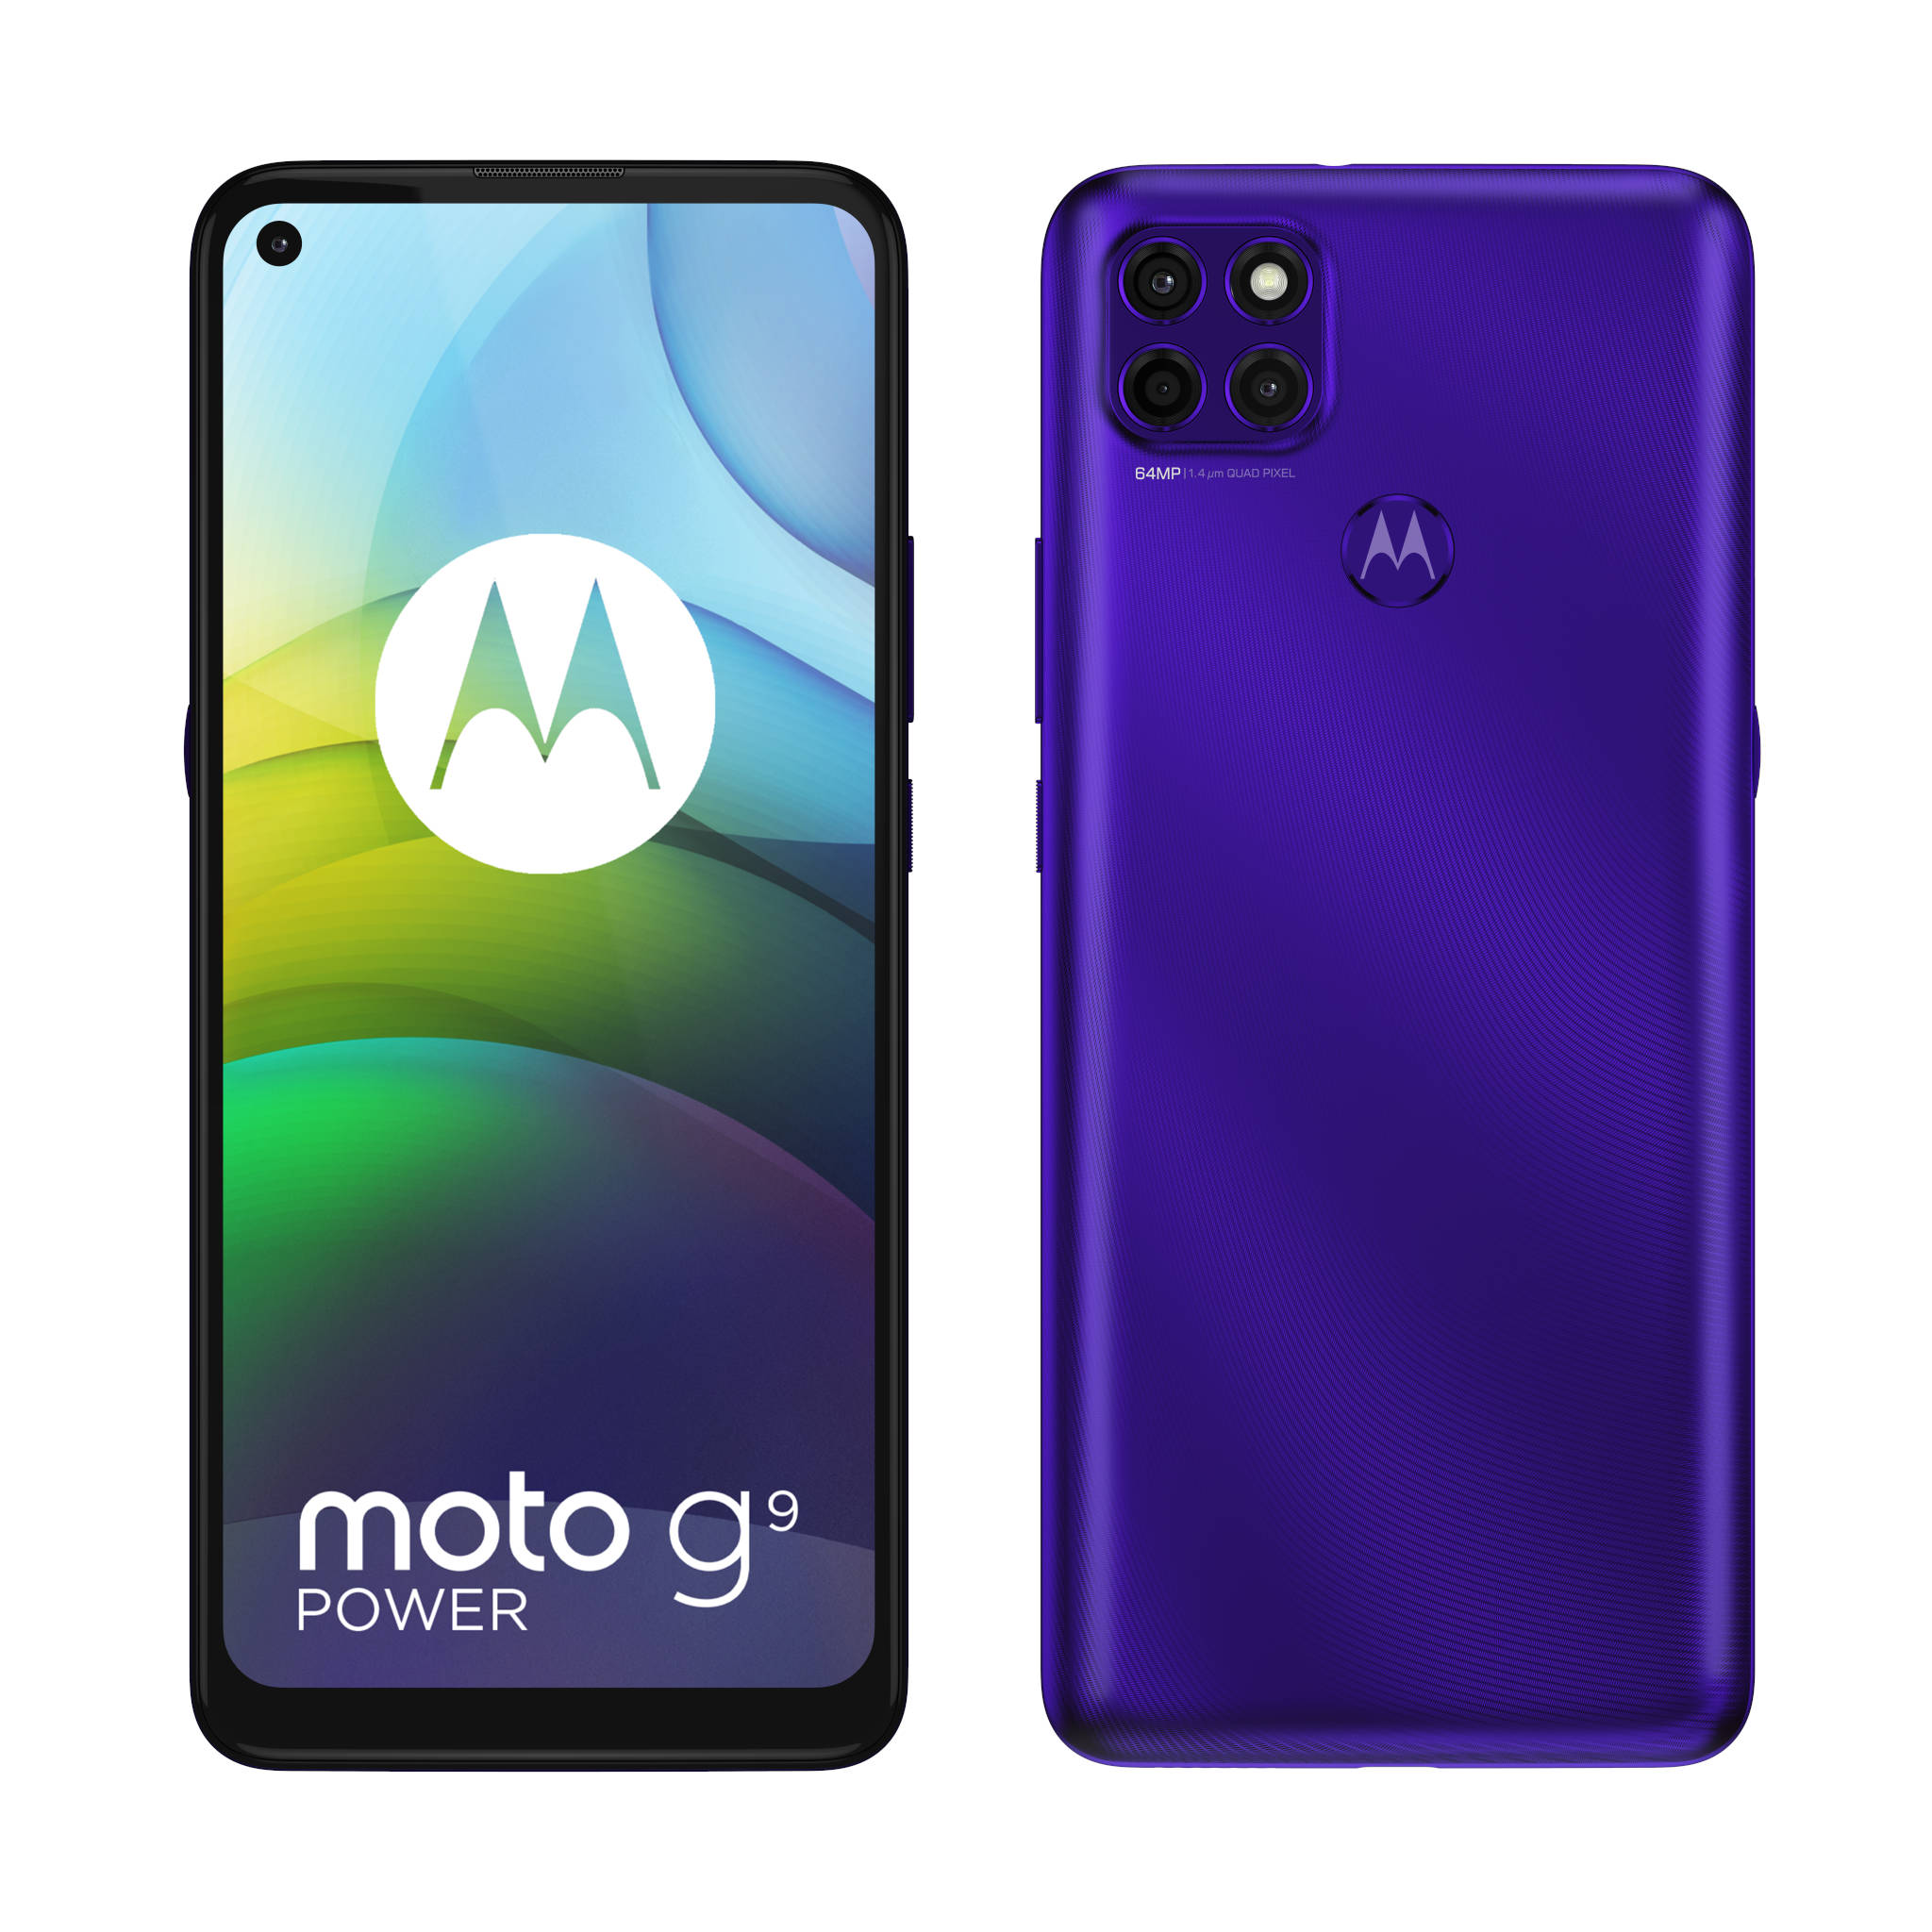 Motorola oficjalnie zaprezentowaa smartfon Moto G9 Power. Specyfikacja, cena i dostpno